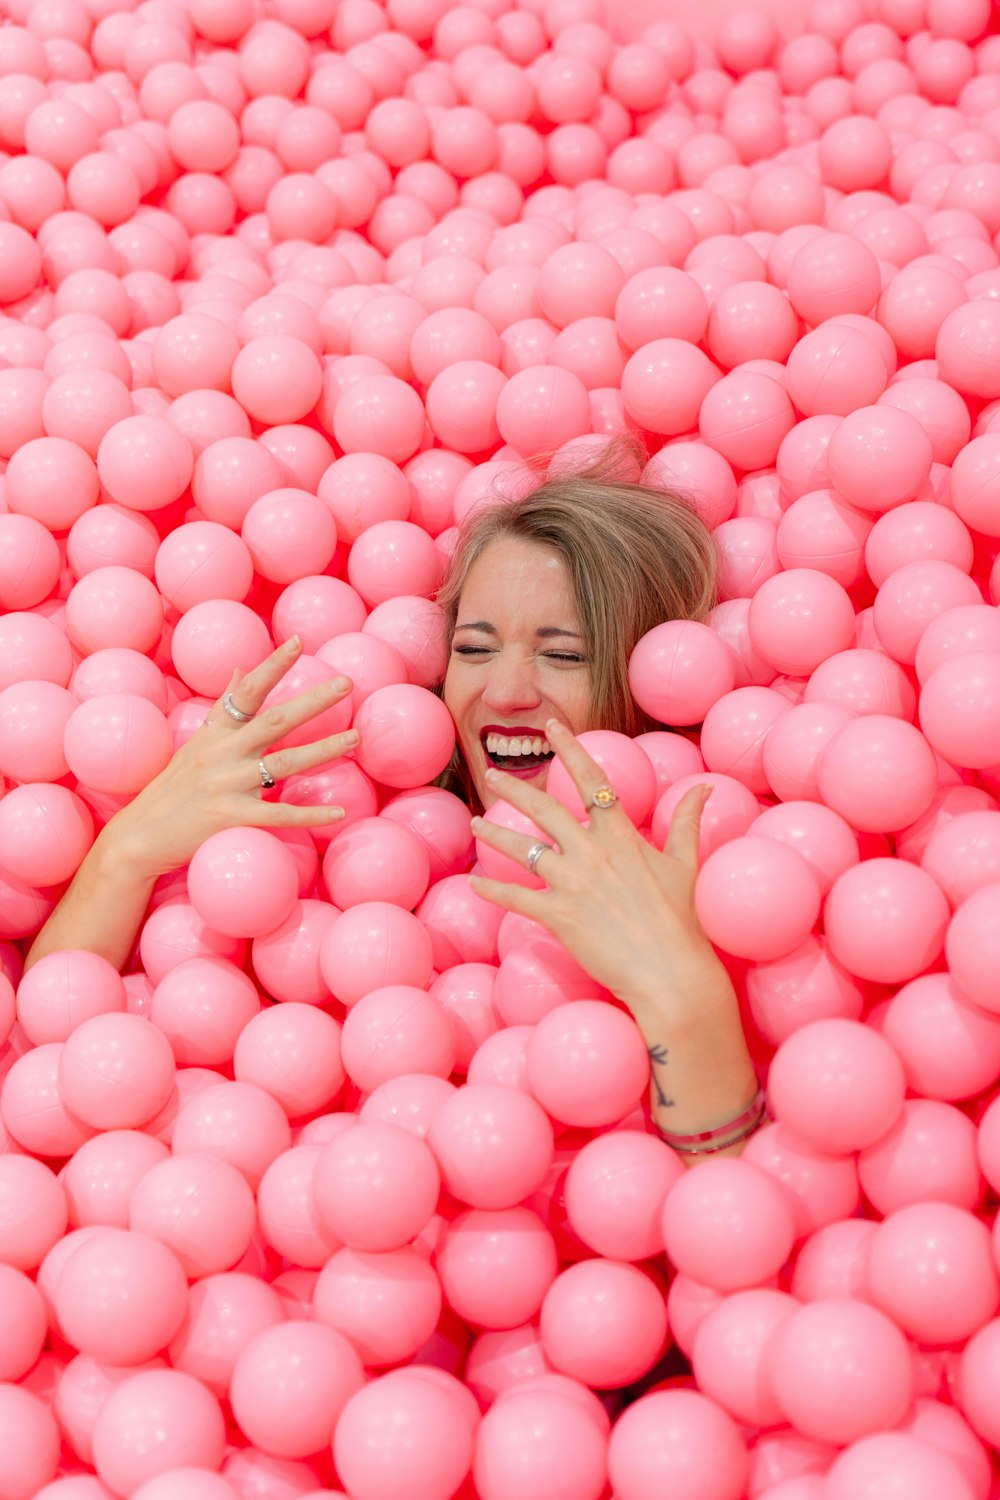 donna dai capelli biondi sdraiata su palle rotonde rosa